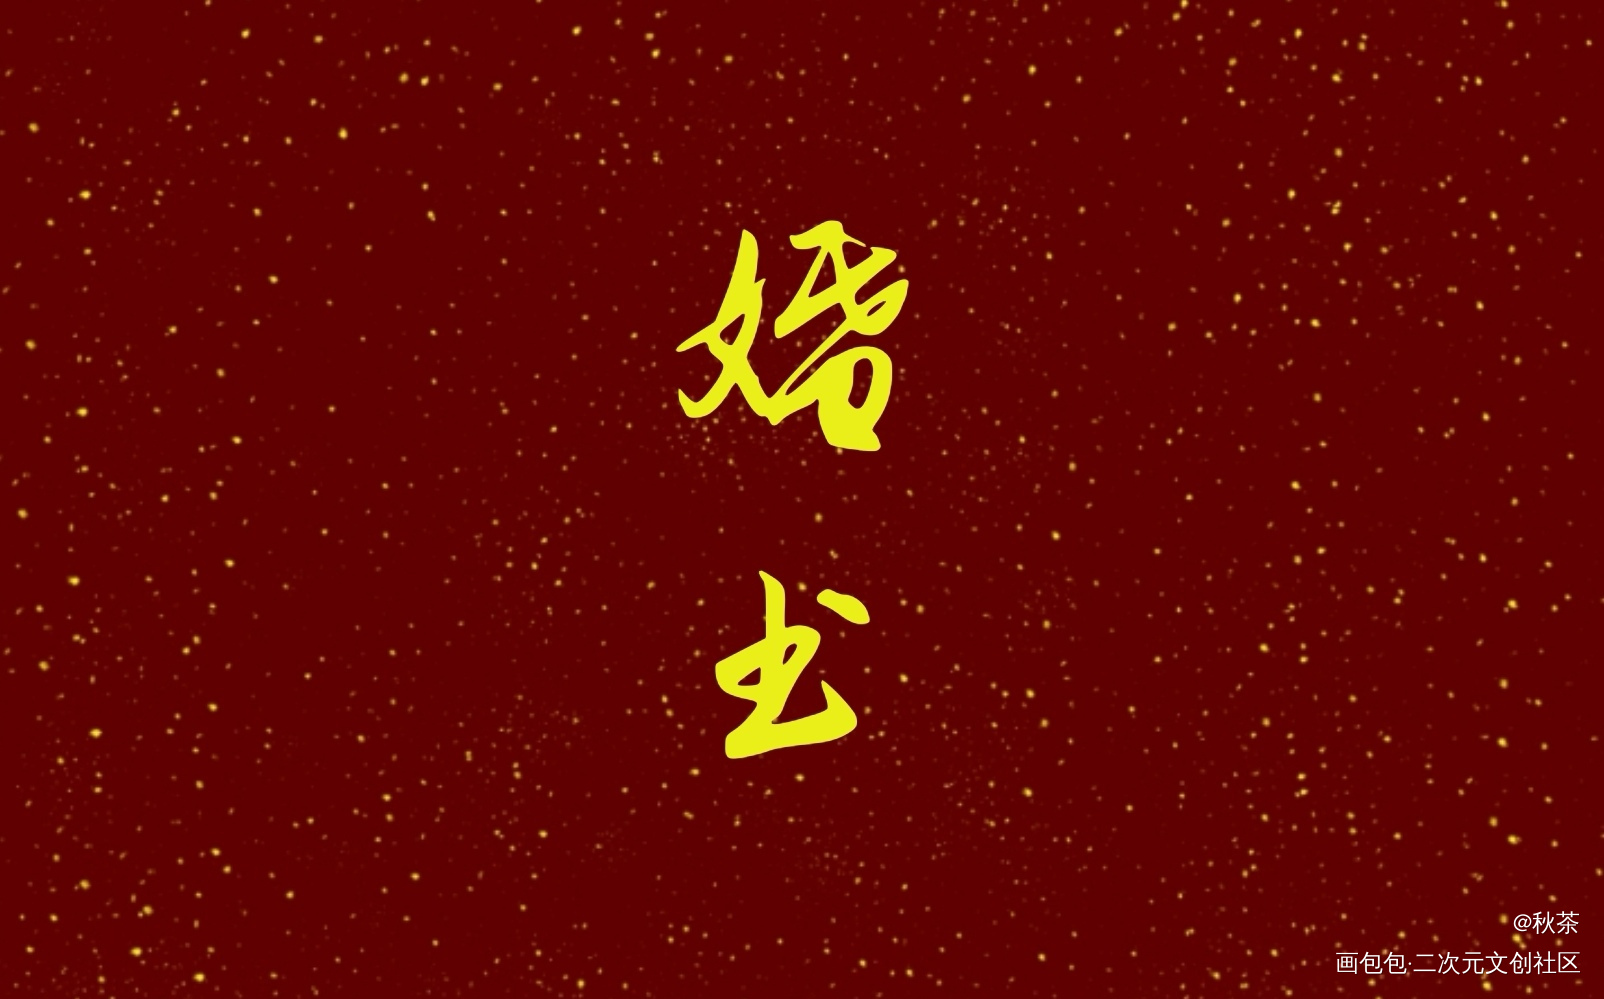 德萨罗人鱼婚书—中文_德萨罗人鱼婚书绘画作品